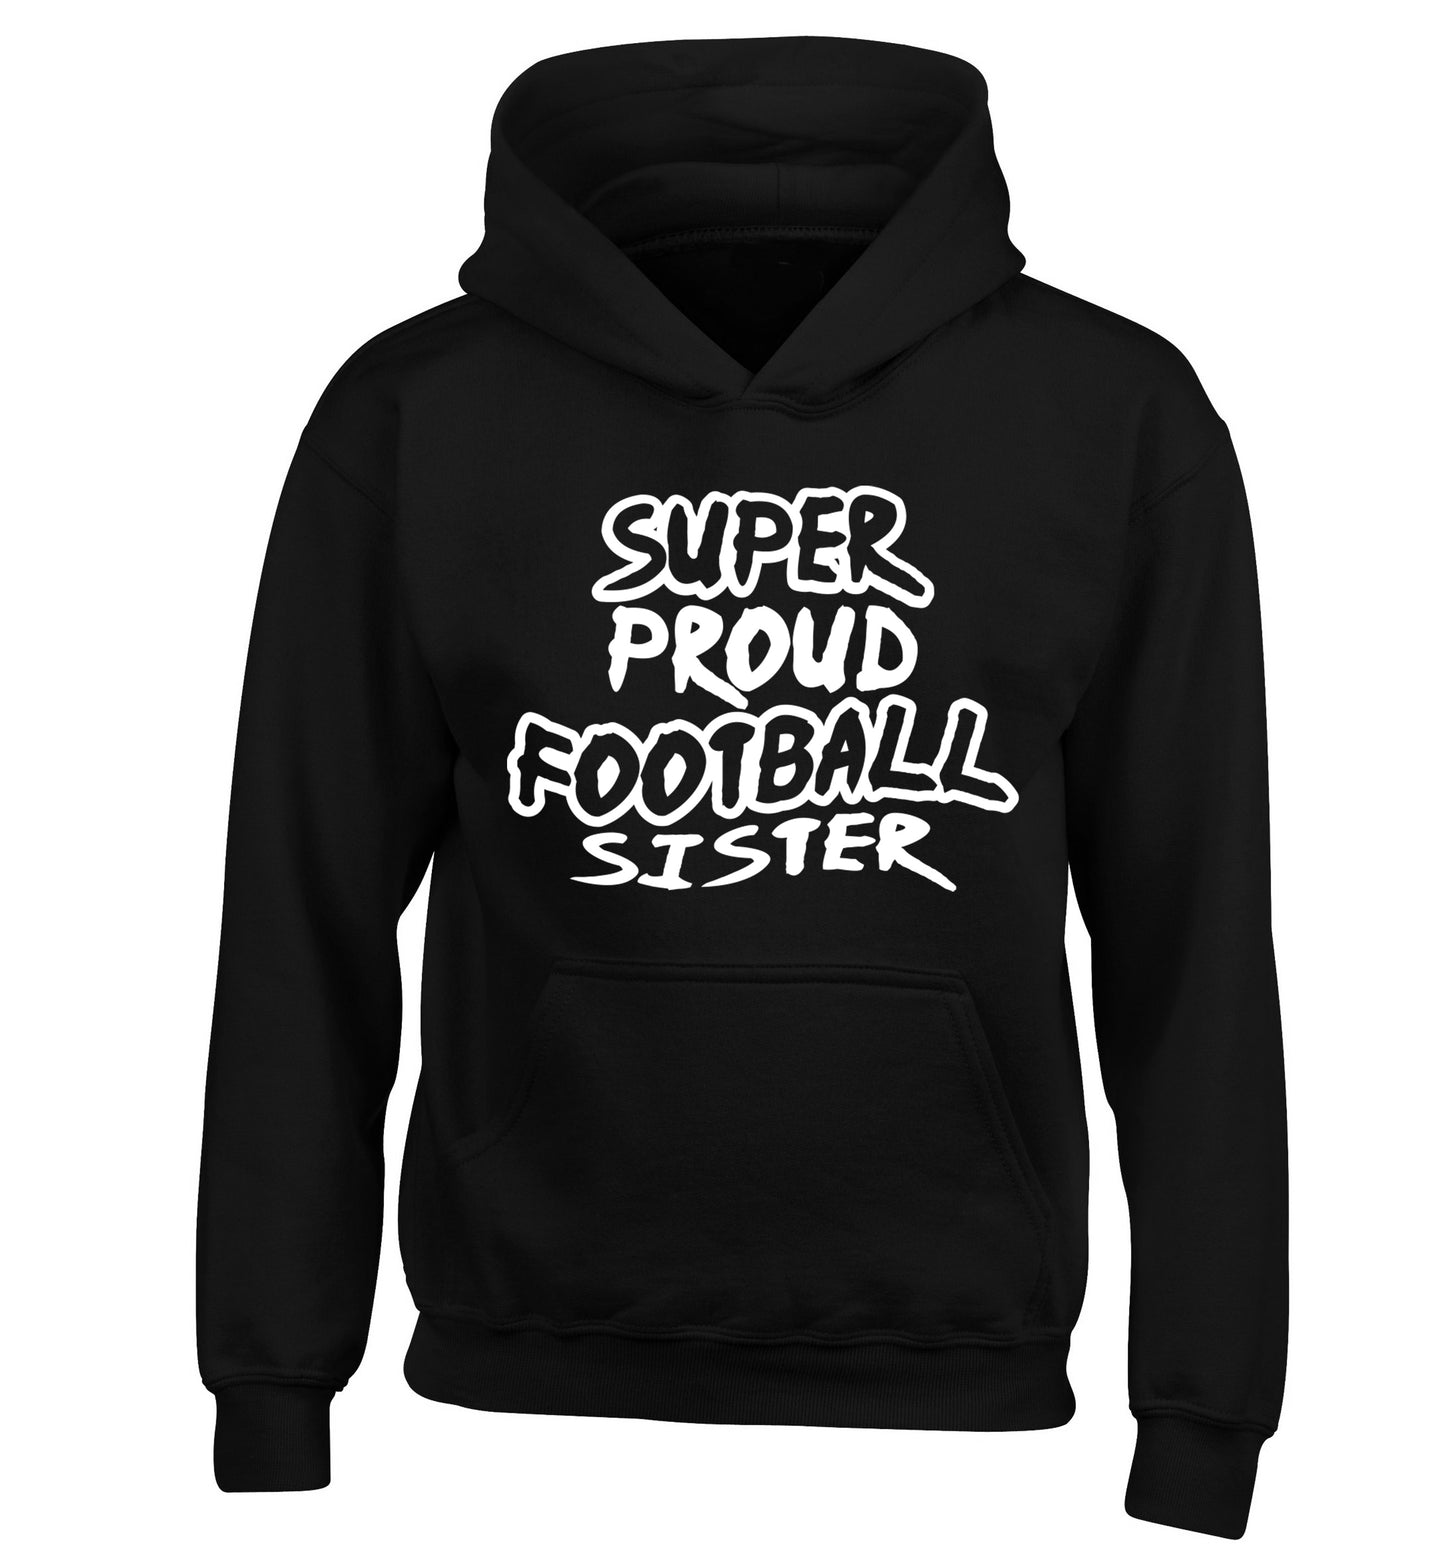 Super proud football sister children's black hoodie 12-14 Years